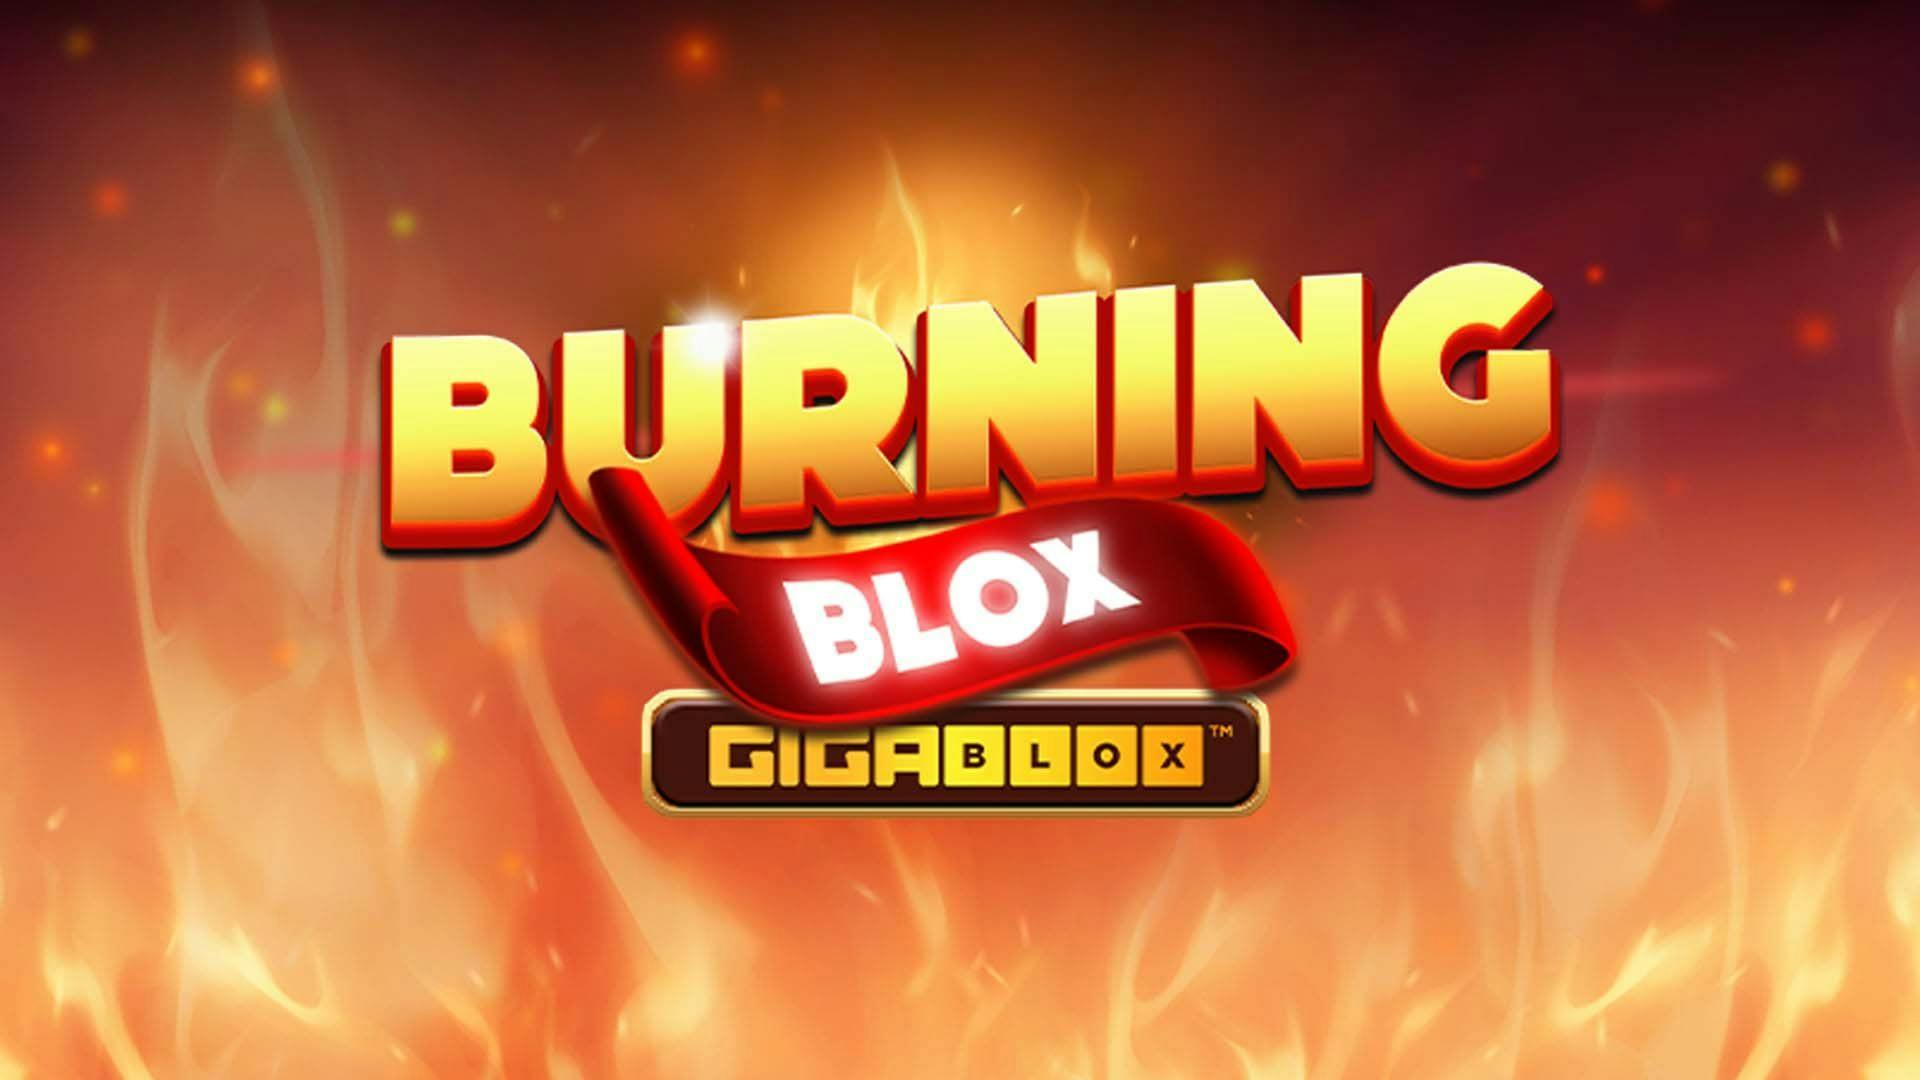 Burning Blox GigaBlox Slot Machine Online Free Game Play